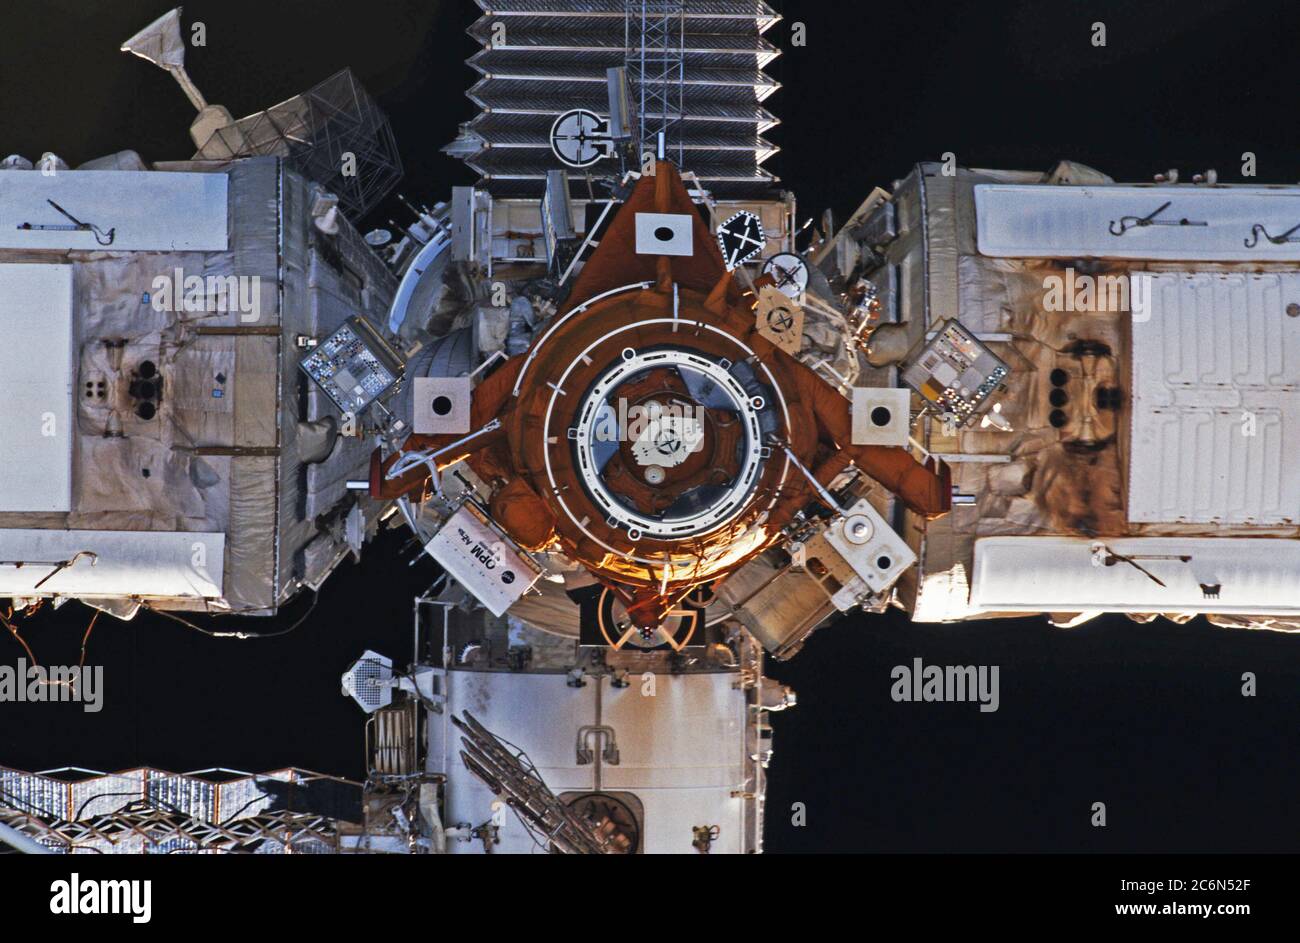 (15-24. Mai 1997) --- EIN Space Shuttle-Sichtbild, das den Andockport und das Ziel während des Rendezvous mit der russischen mir-Raumstation zeigt. Das Bild sollte horizontal gehalten werden, wobei sich das zurückgezogene Kristall-Solarfeld oben befinden sollte. Andere Elemente, die teilweise sichtbar sind, sind Kvant-2 (links), Spektr (rechts) und Core Module (unten). Stockfoto